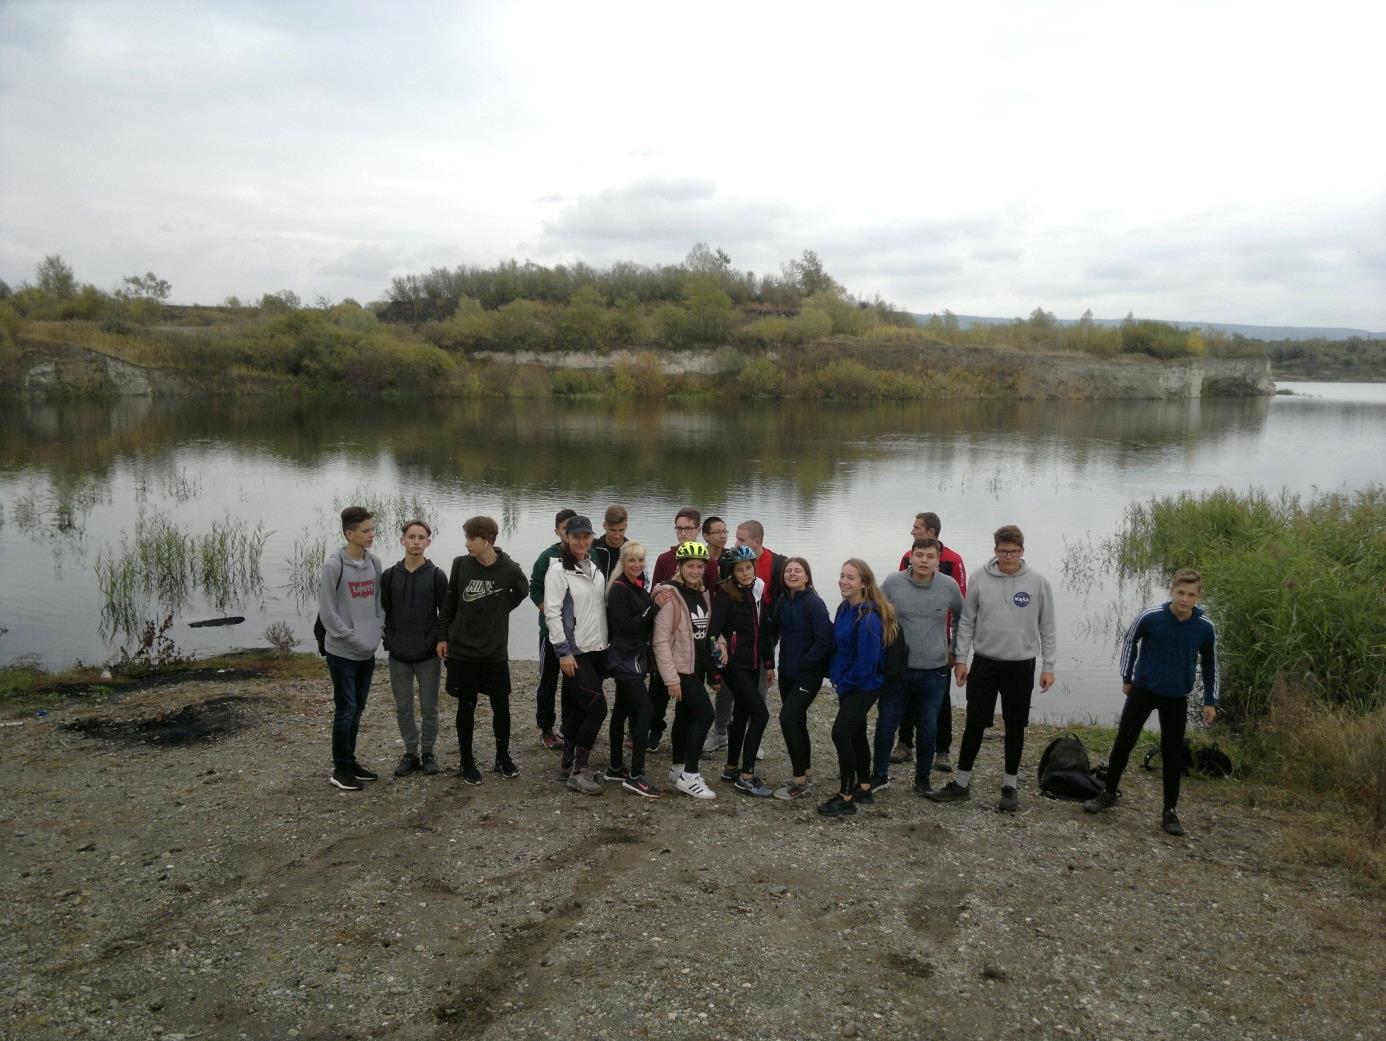 28. A diákcsoport a volt külszíni lignitbányánál, ahol a Masztodon ősállatot megtalálták